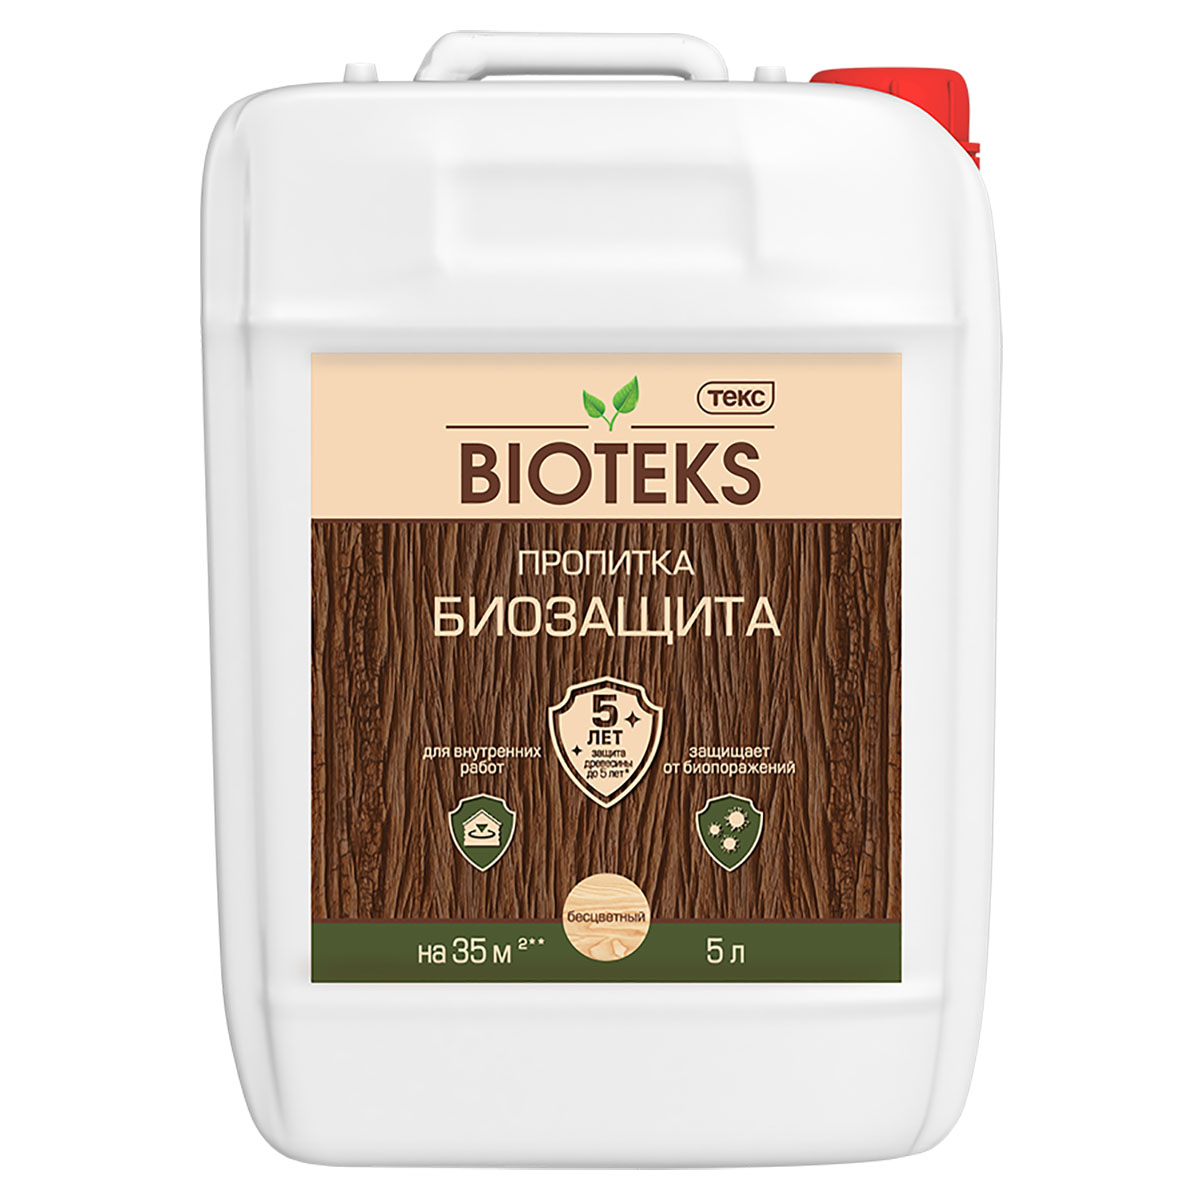 

ТЕКС BIOTEKS Биозащита пропитка для защиты древесины, бесцветный (10л)